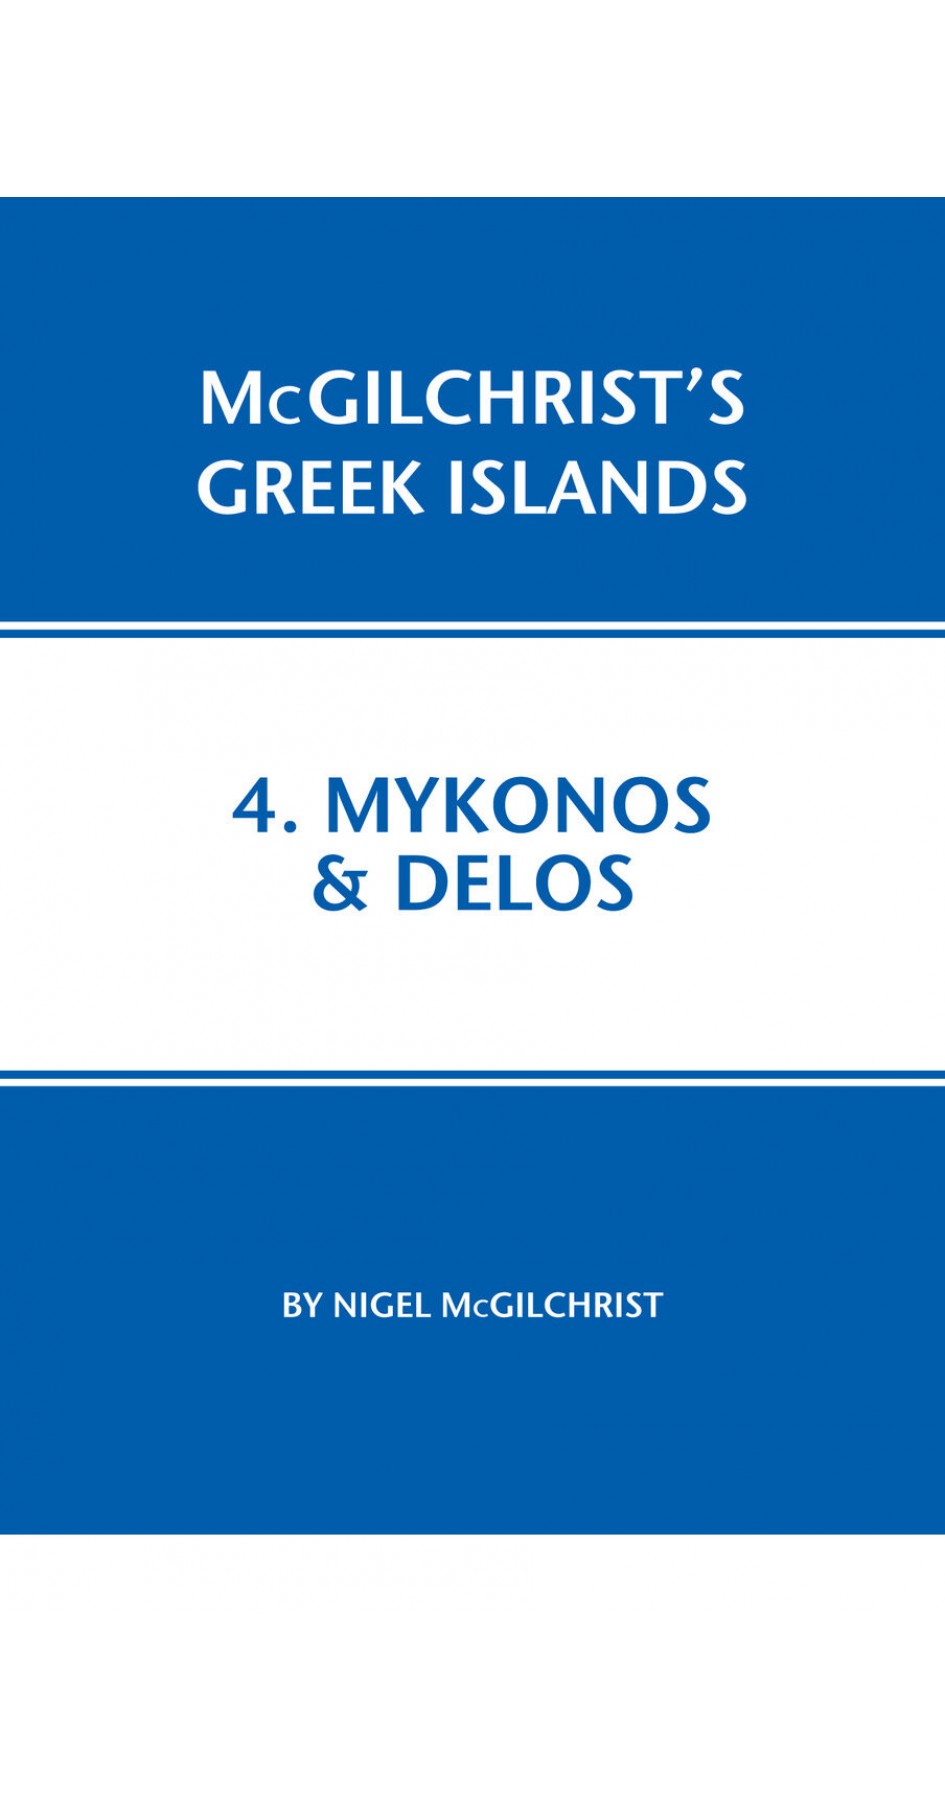 04. Mykonos & Delos - McGilchrist’s Greek Islands